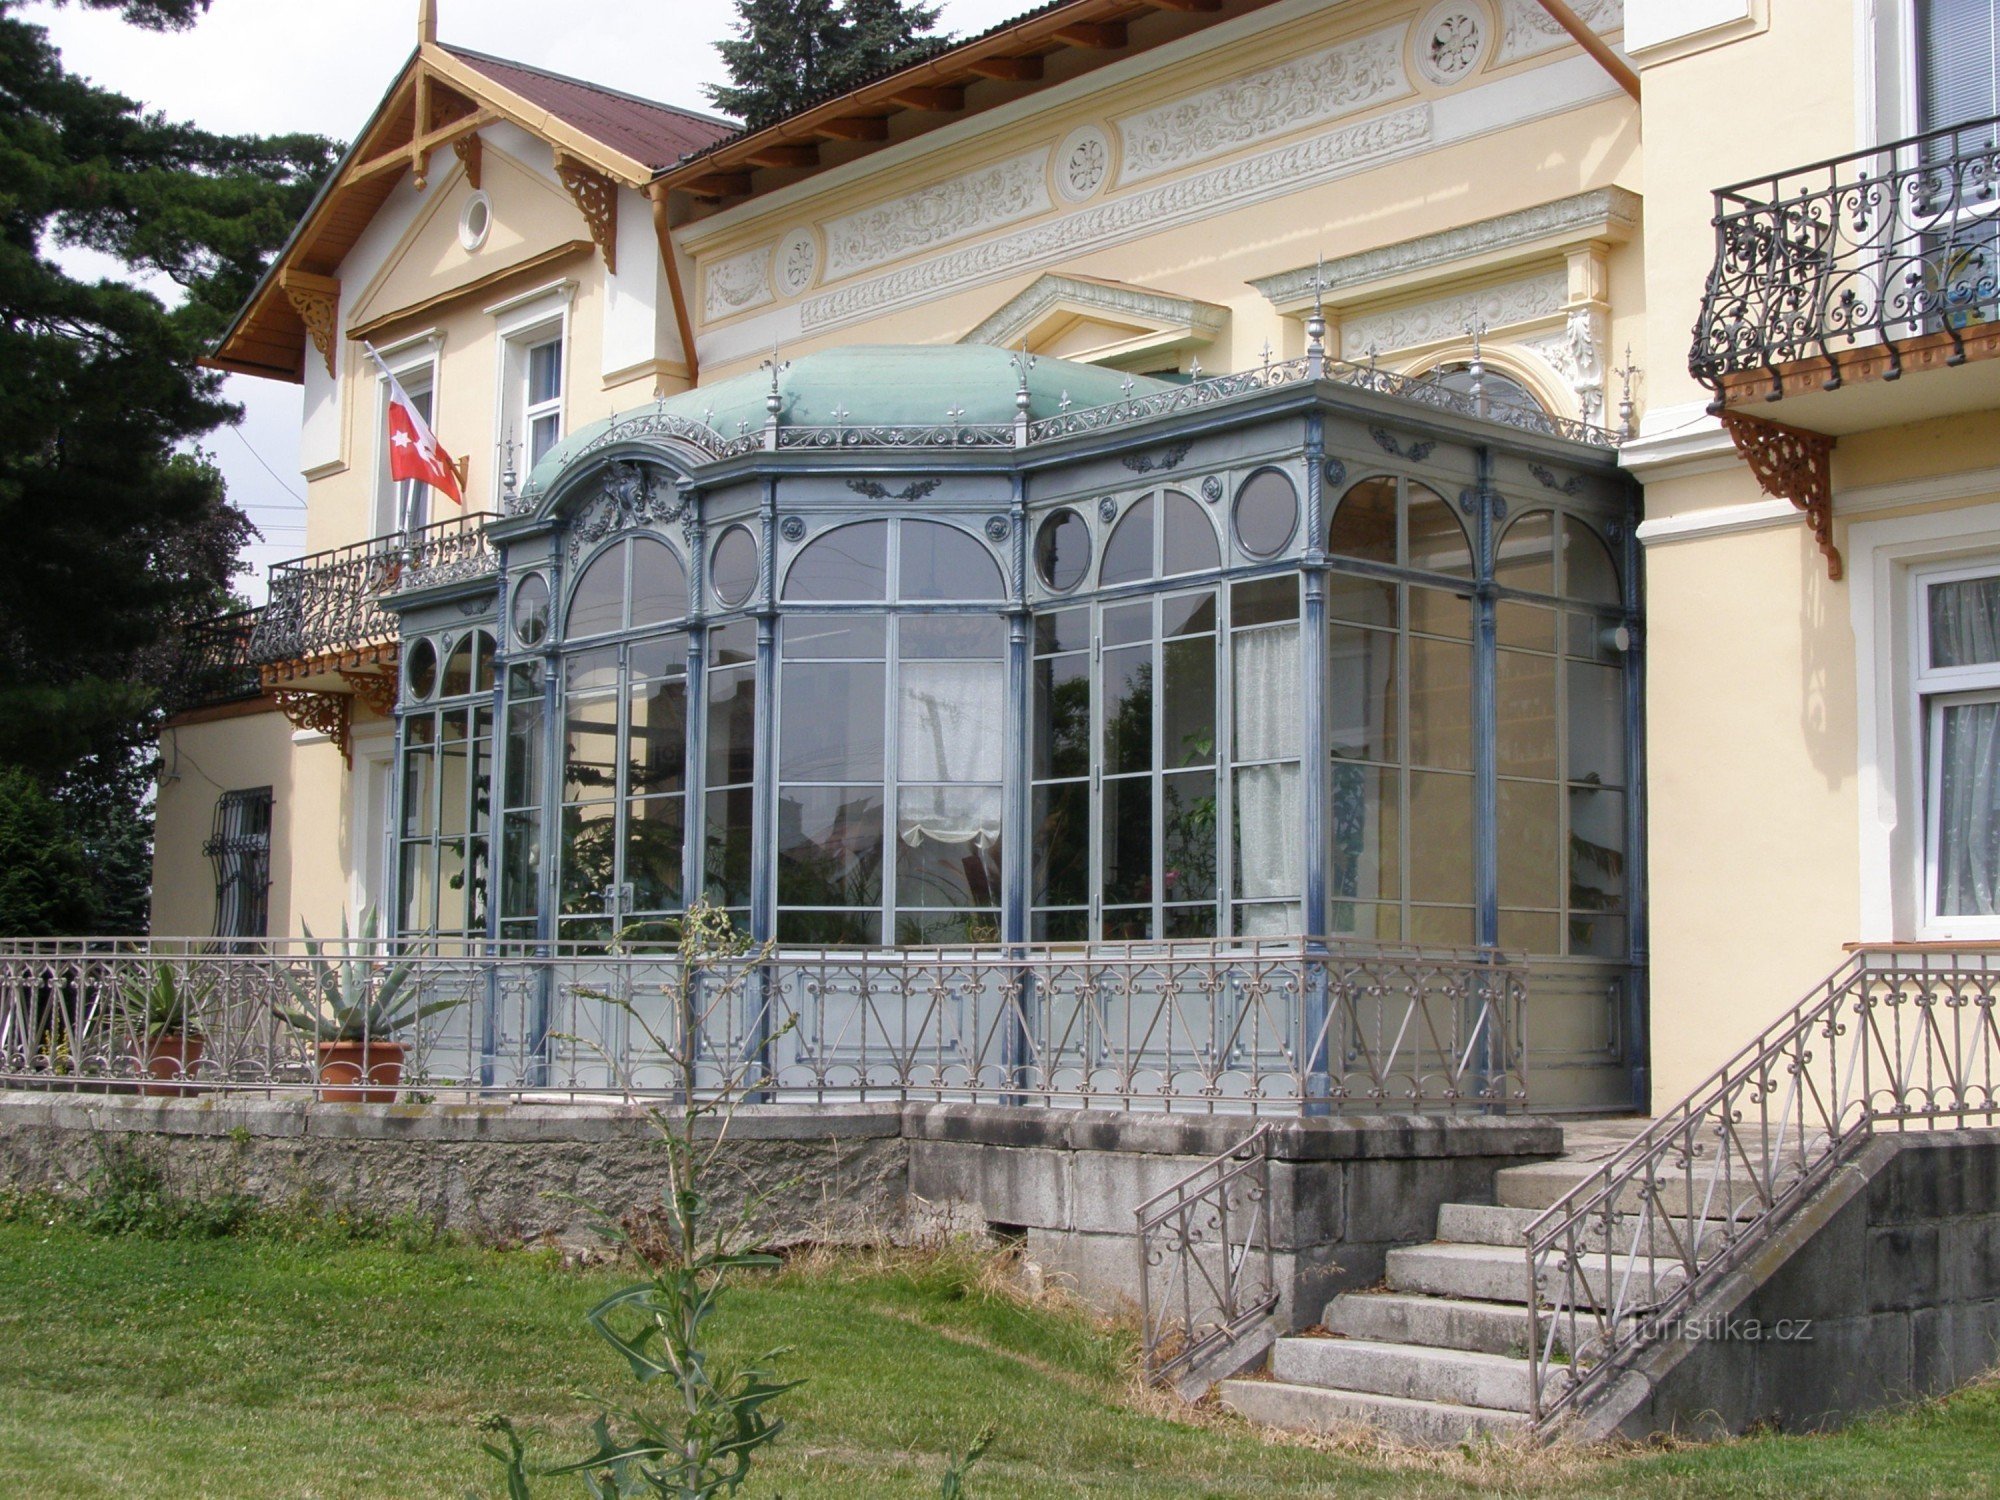 Javorník - bảo tàng, trung tâm văn hóa thành phố